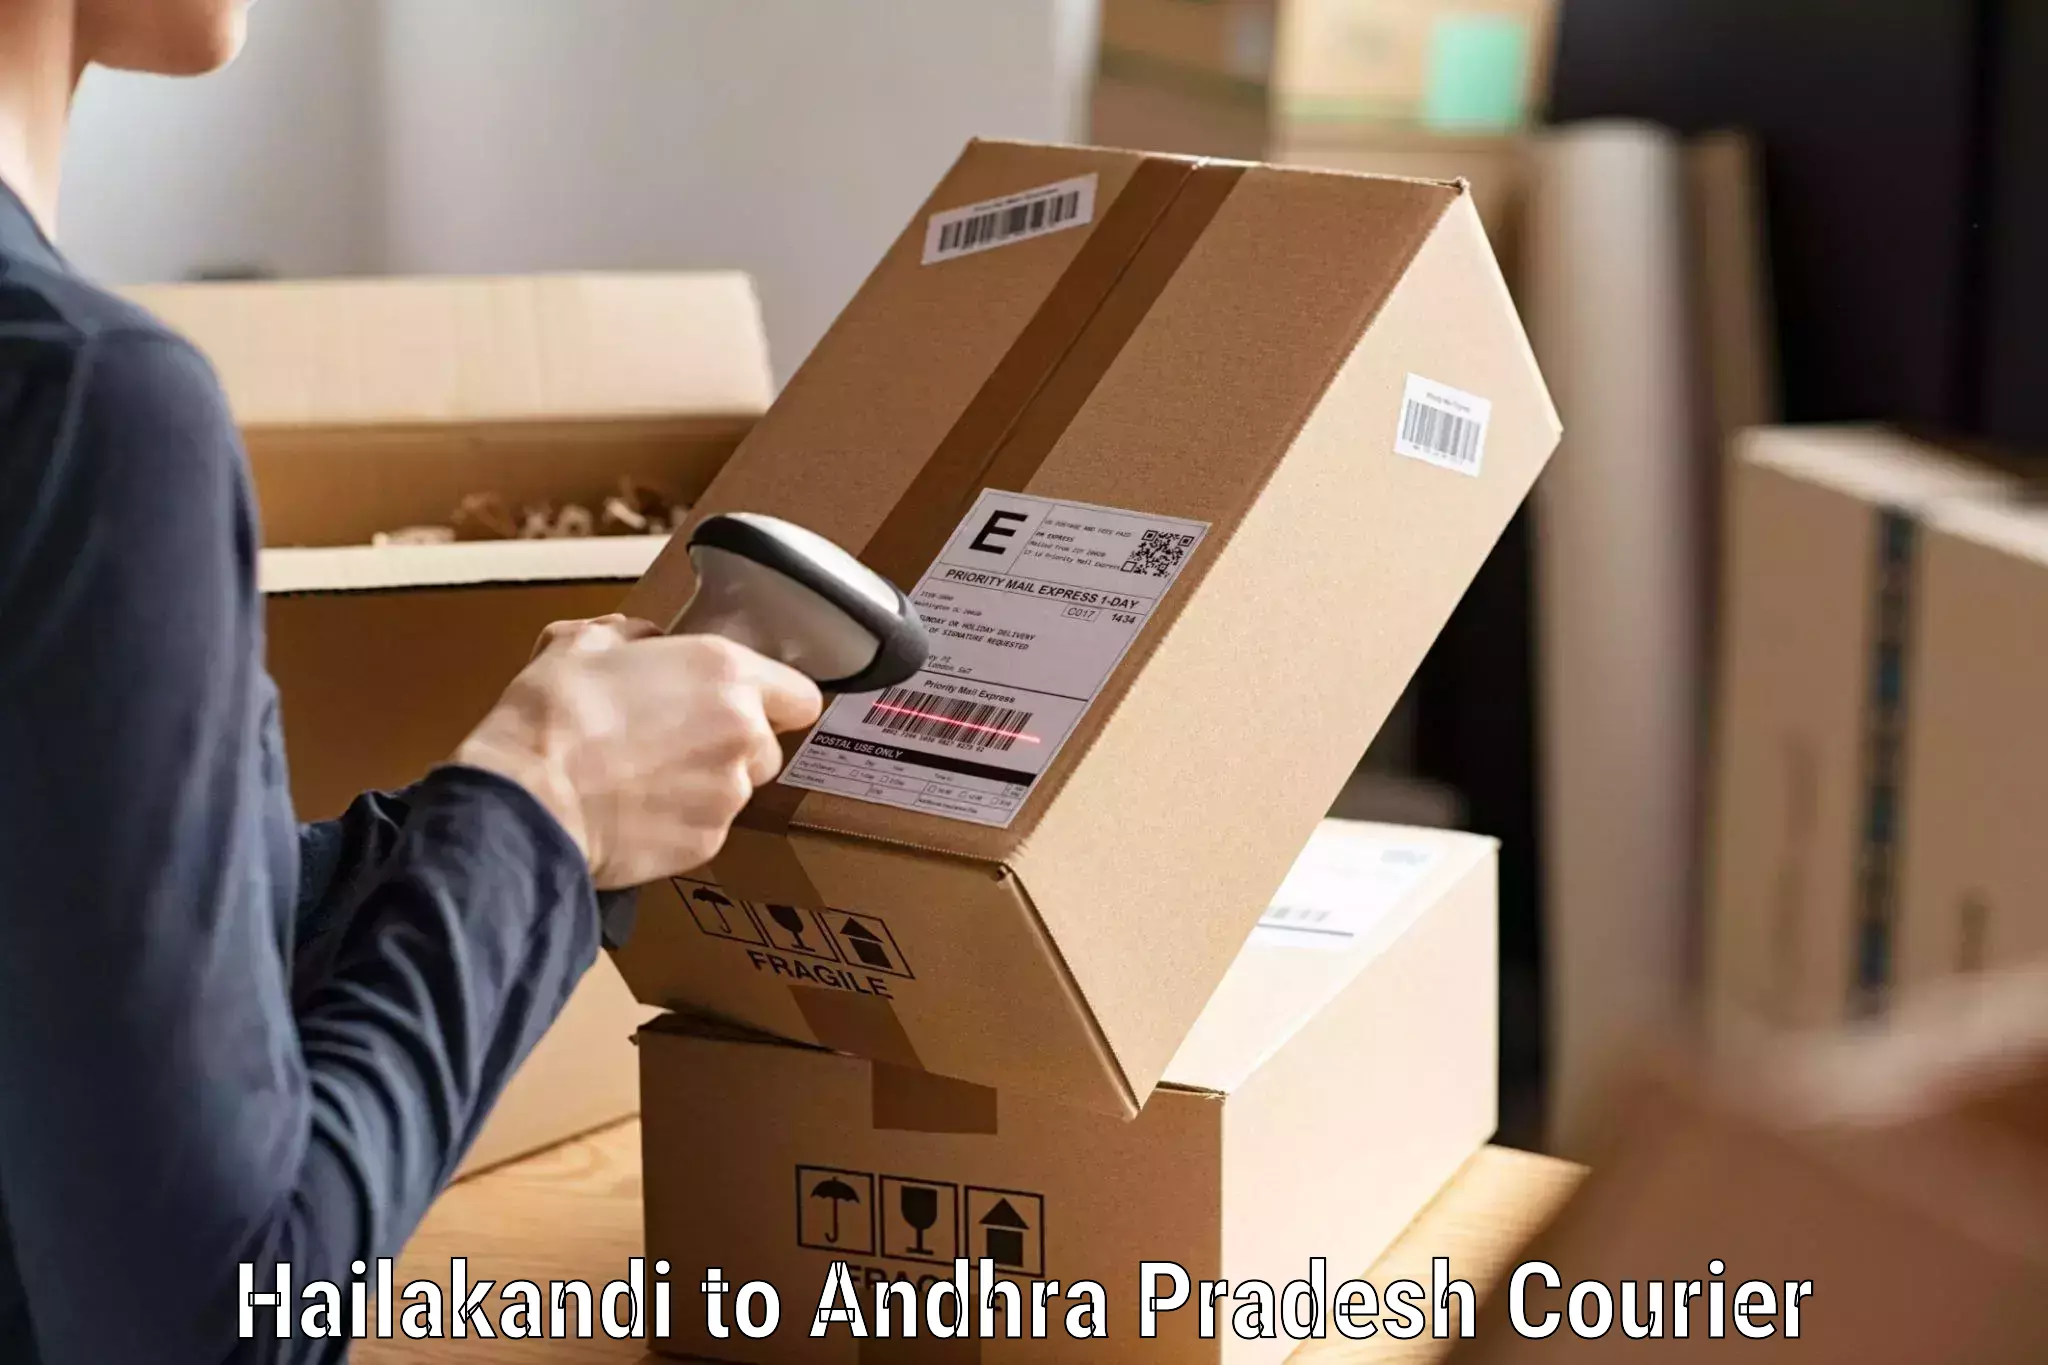 State-of-the-art courier technology Hailakandi to Chillakallu